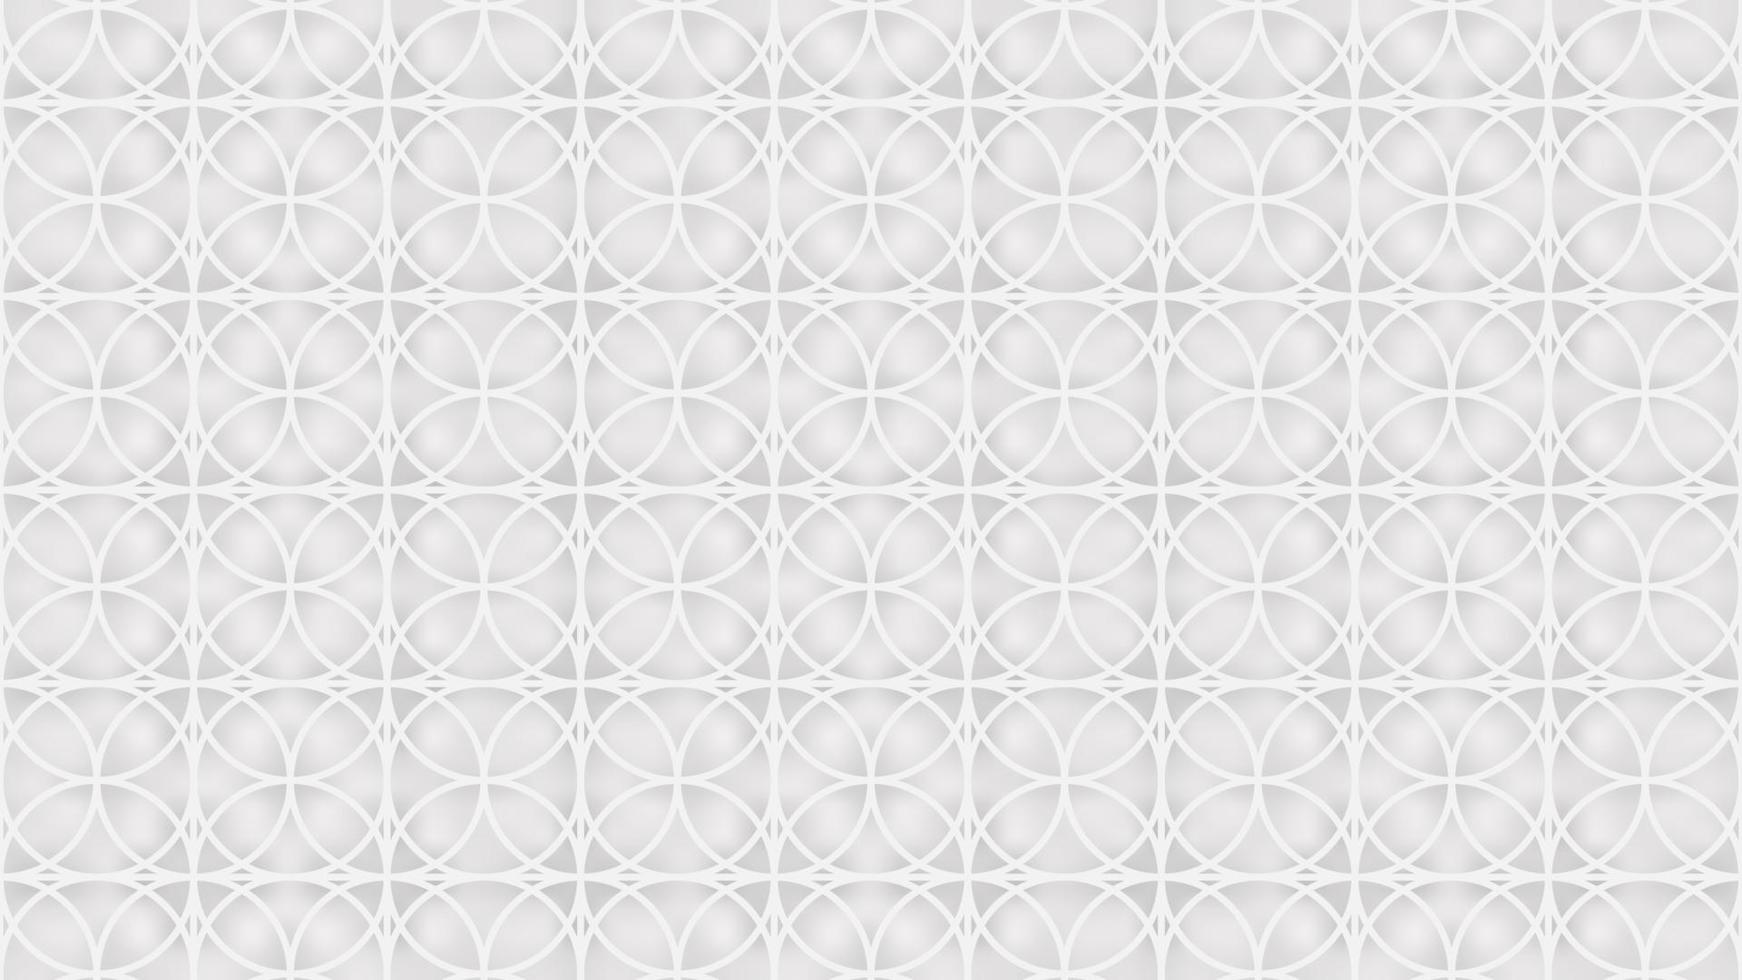 Hintergrund mit nahtlosem Muster im islamischen Stil auf weiß. Vektor-Illustration. Folge 10. vektor